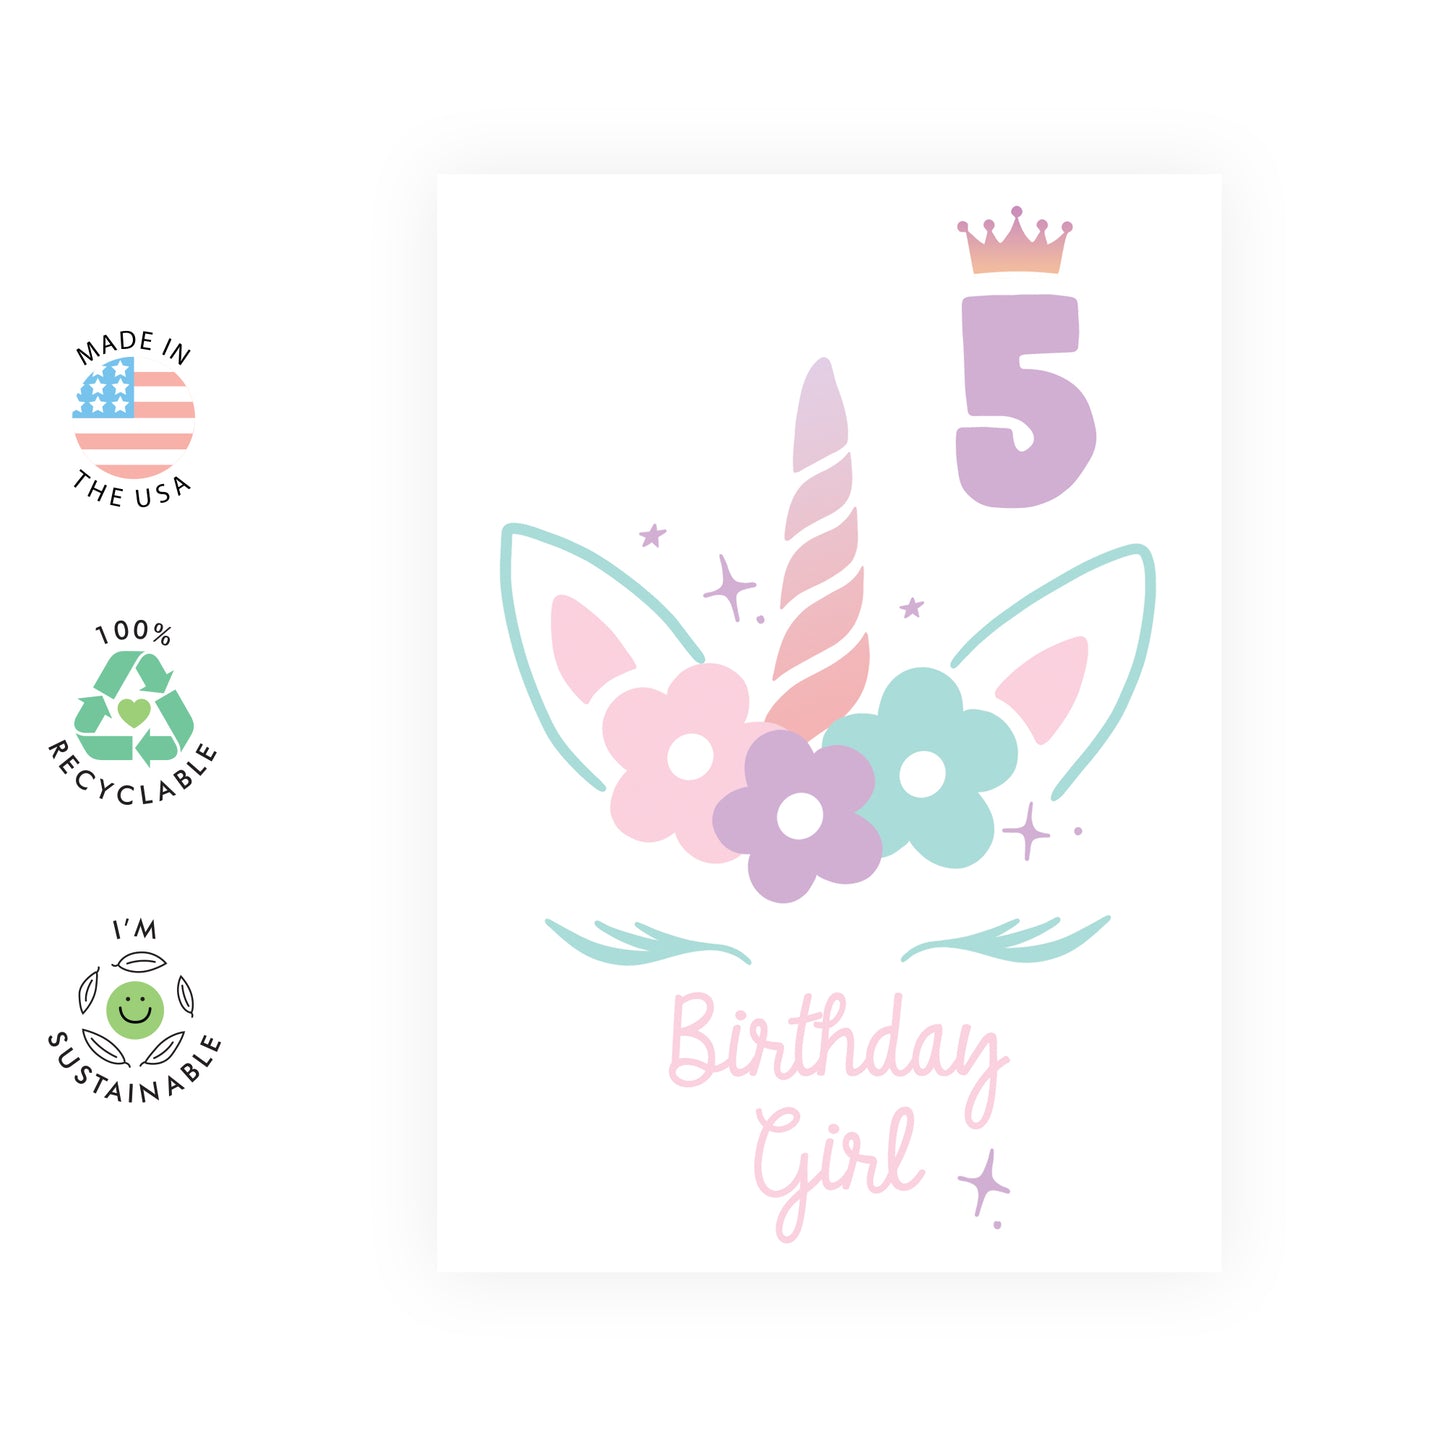 5th Birthday Card - Birthday Girl 5 - For Kids Girls